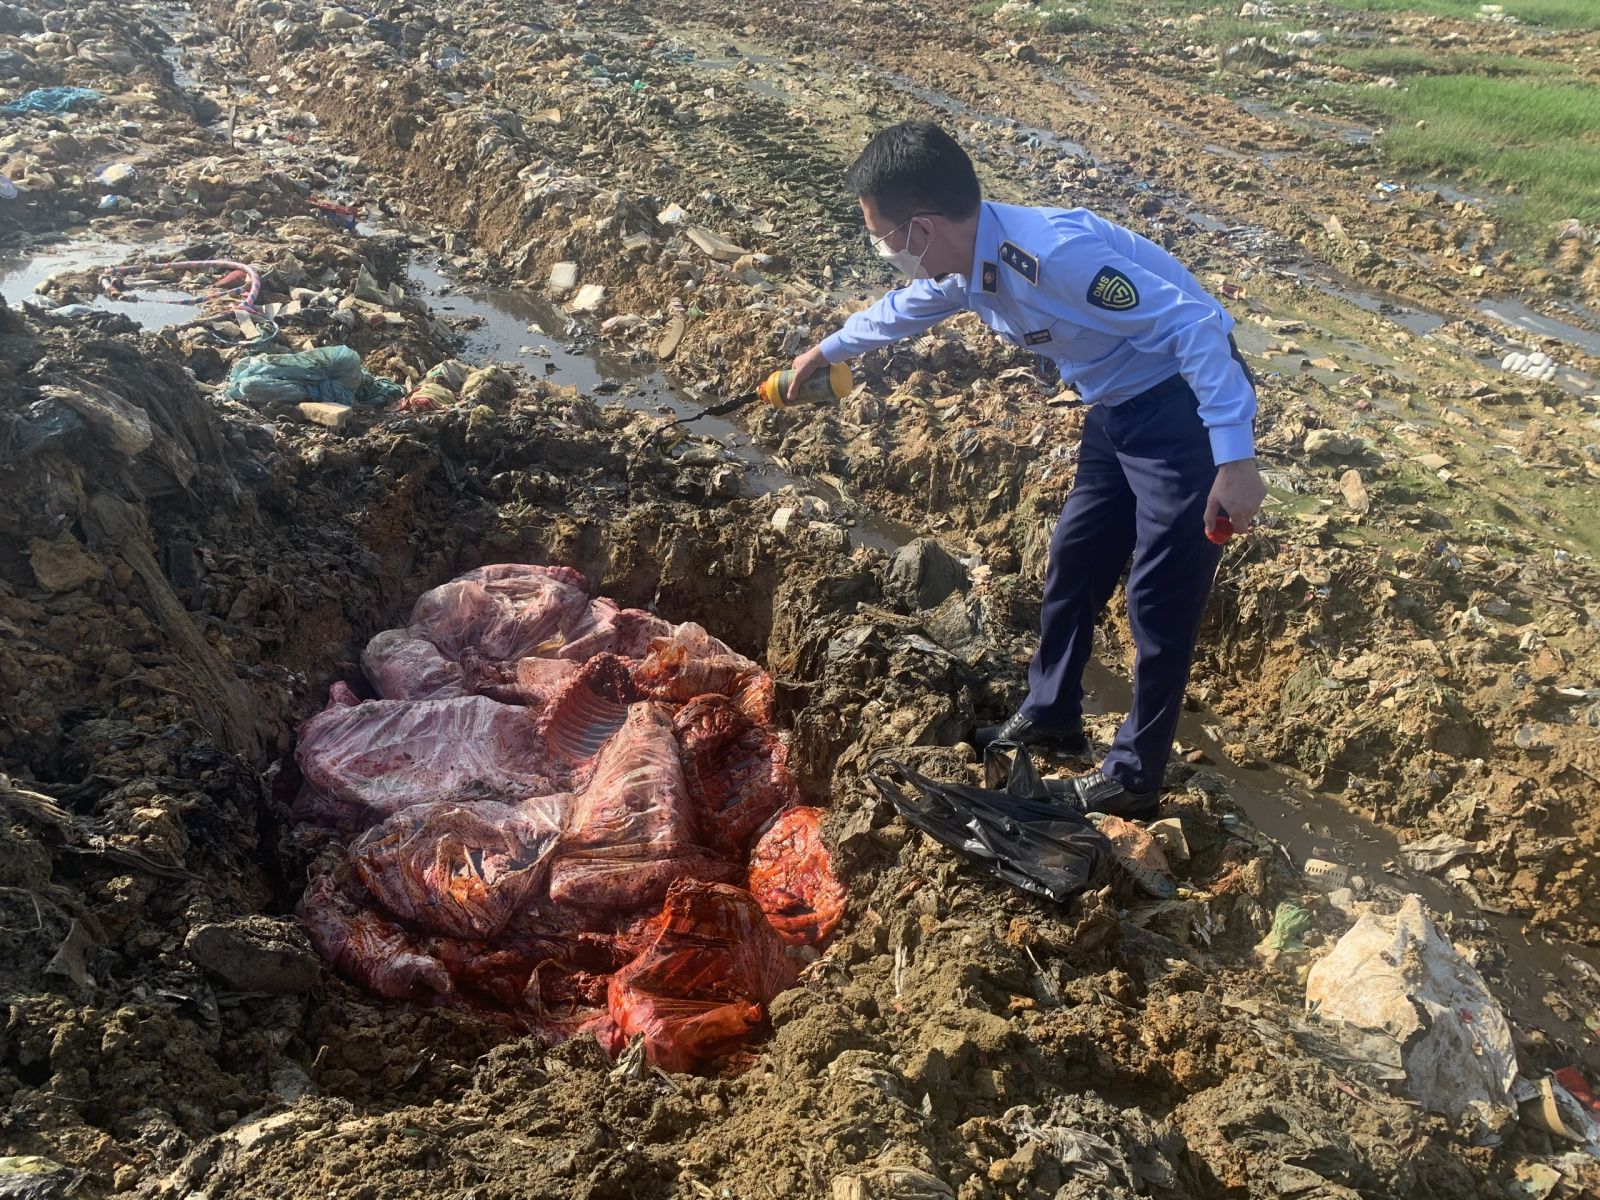 Kinh hoàng: 650kg thịt sườn lợn thối sắp tuồn ra thị trường bị thu giữ ở Nghệ An - Ảnh 2.